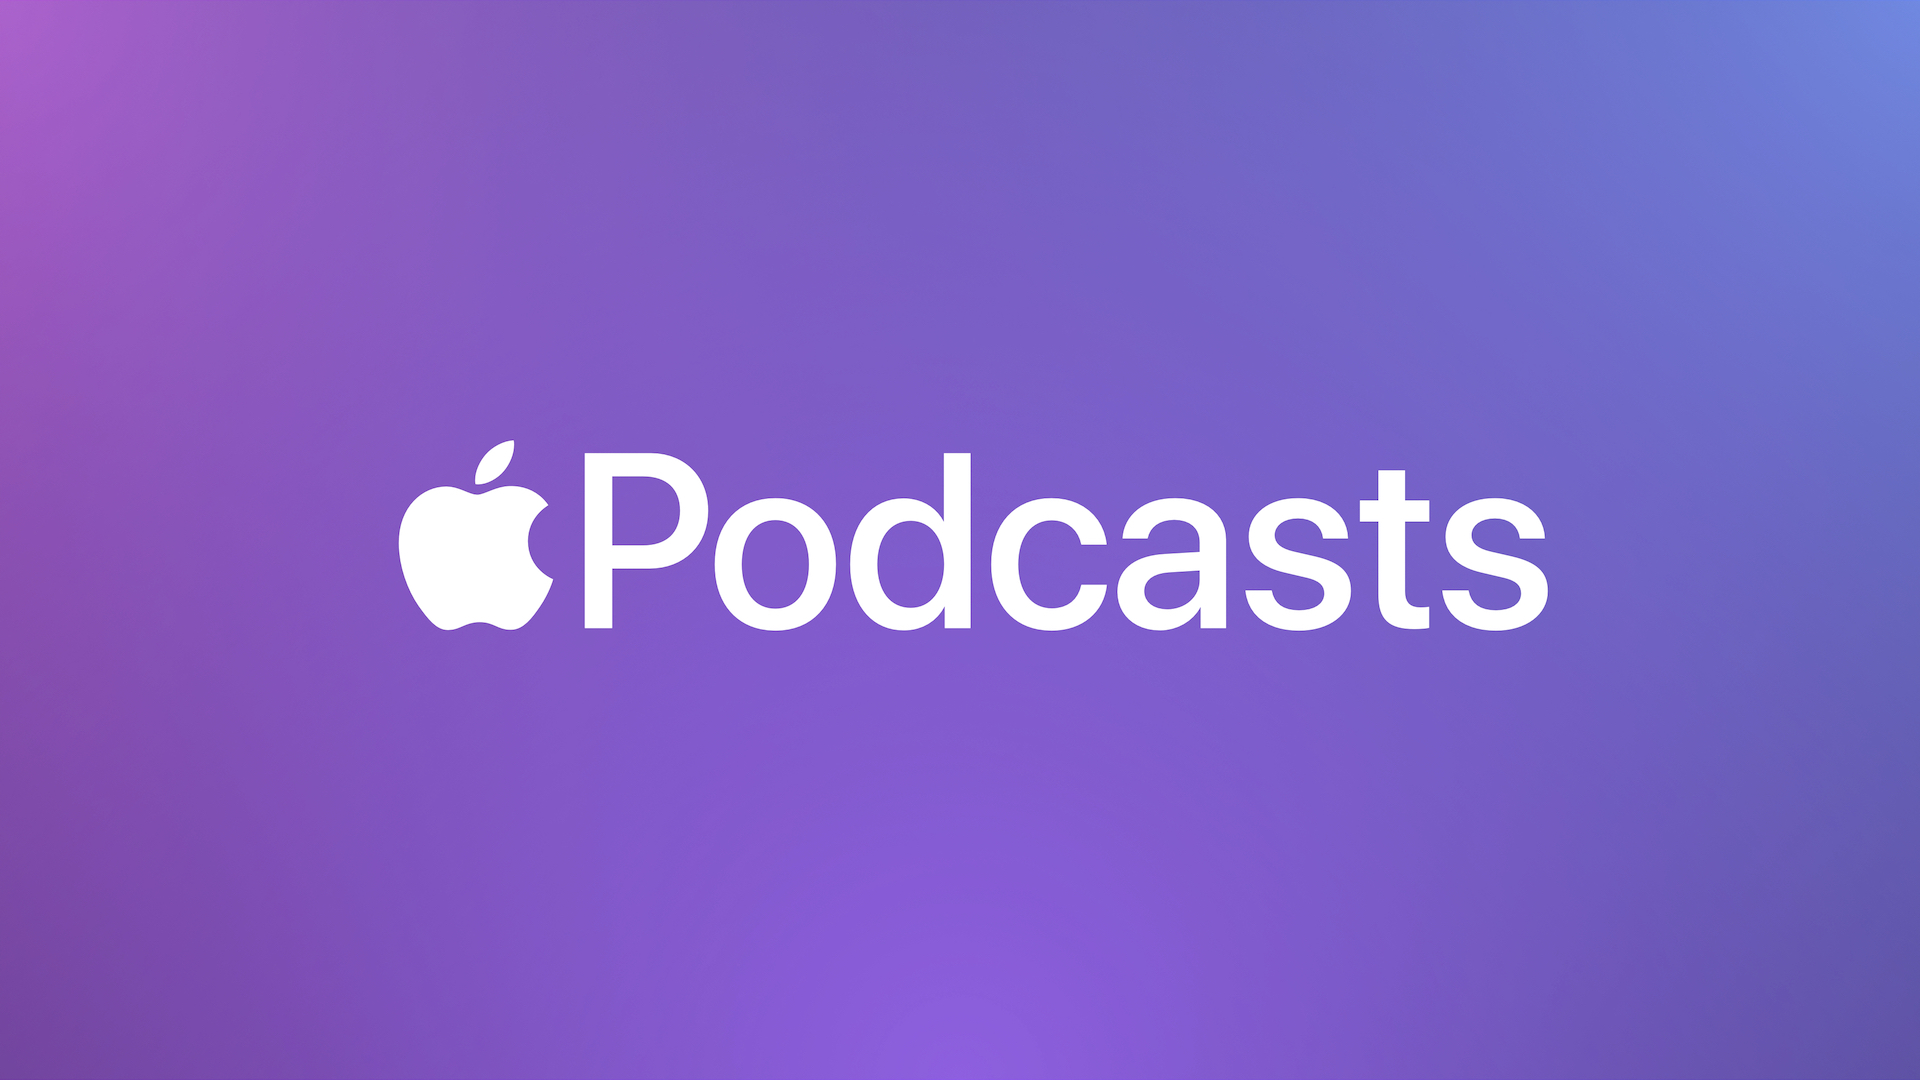 Apple、最新iOSアップデートにより過去のポッドキャストが自動ダウンロードされなくなることを発表